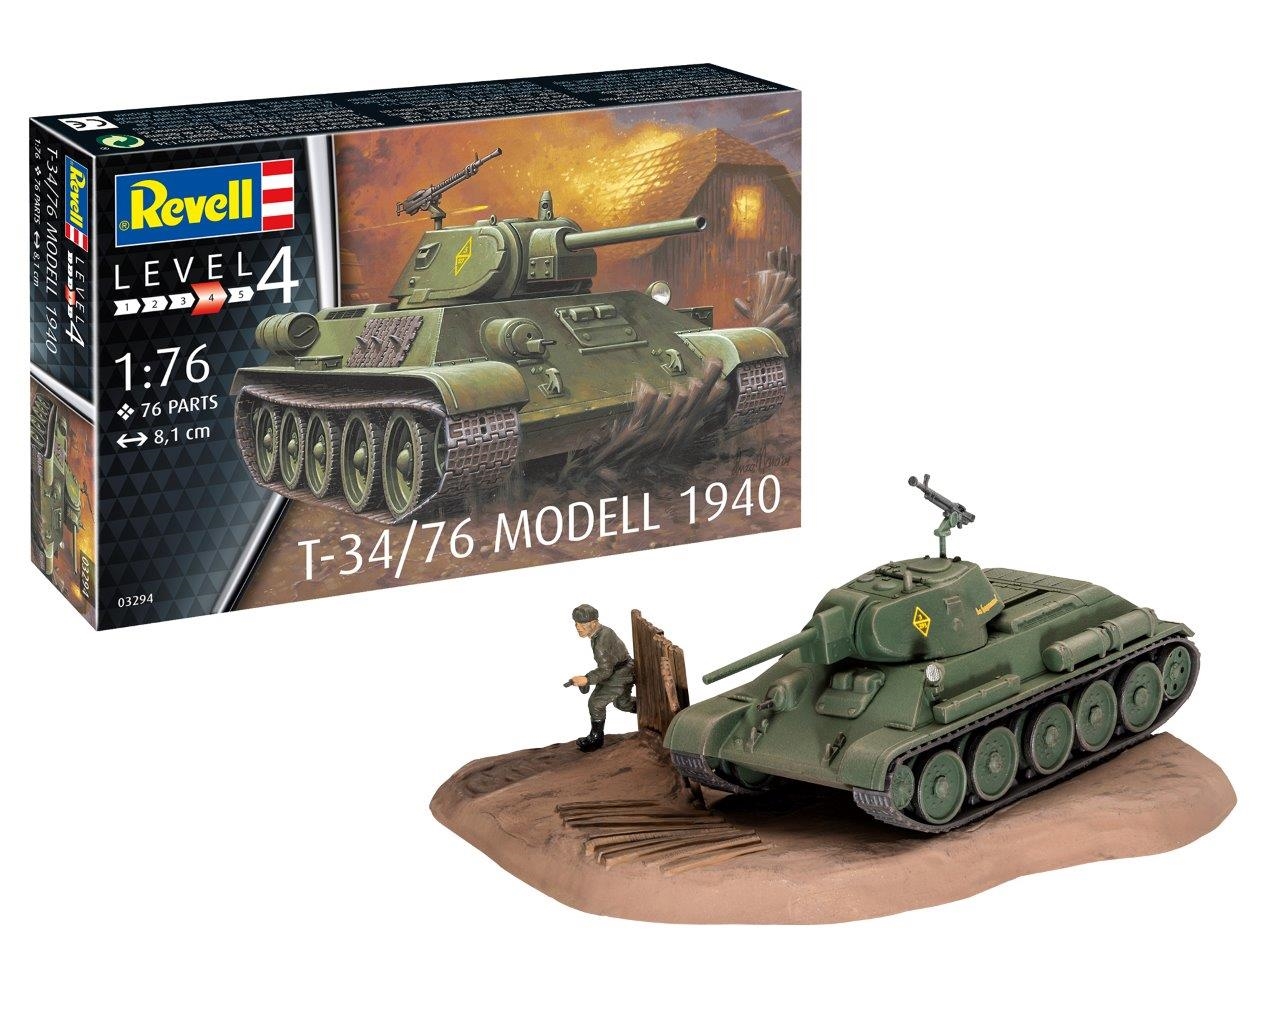 Revell 3294 - T-34/76 MODELL 1940